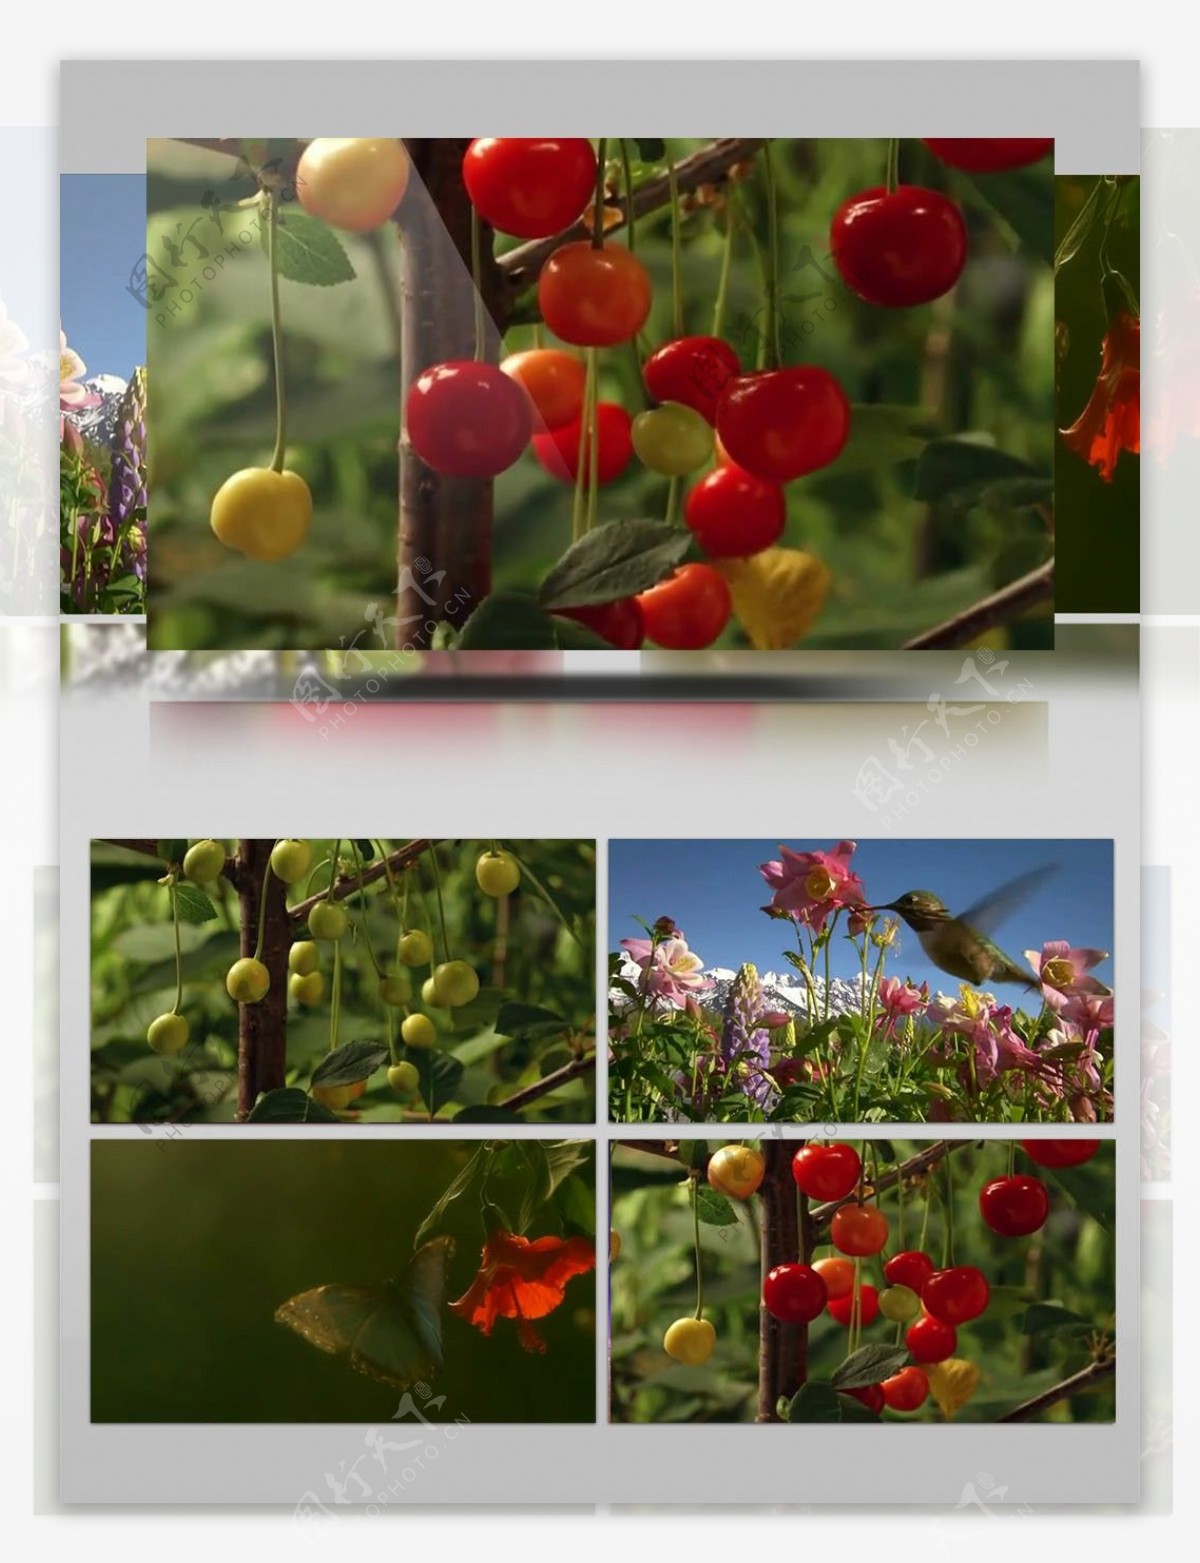 水果植物特写镜头素材